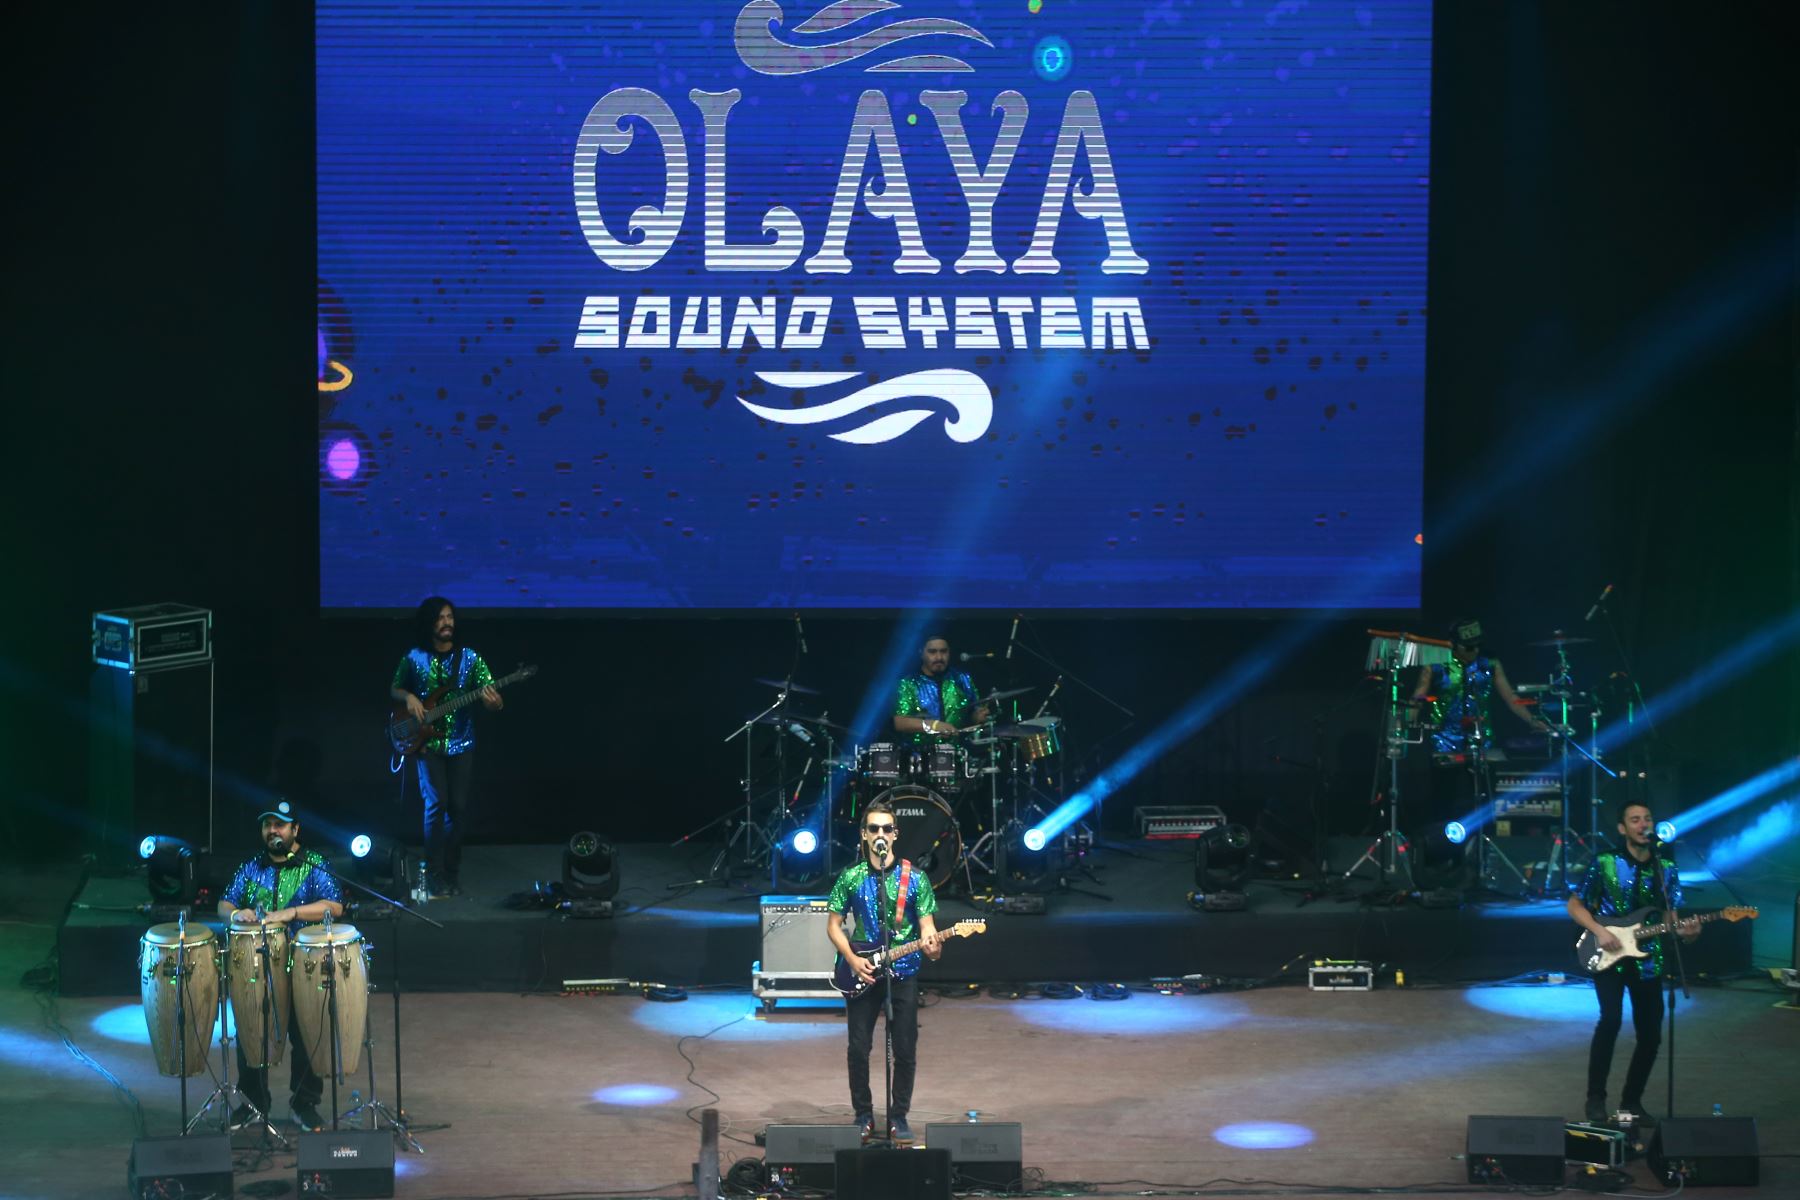 Olaya Sound System ofrece un concierto gratuito en la Feria de Barranco |  Noticias